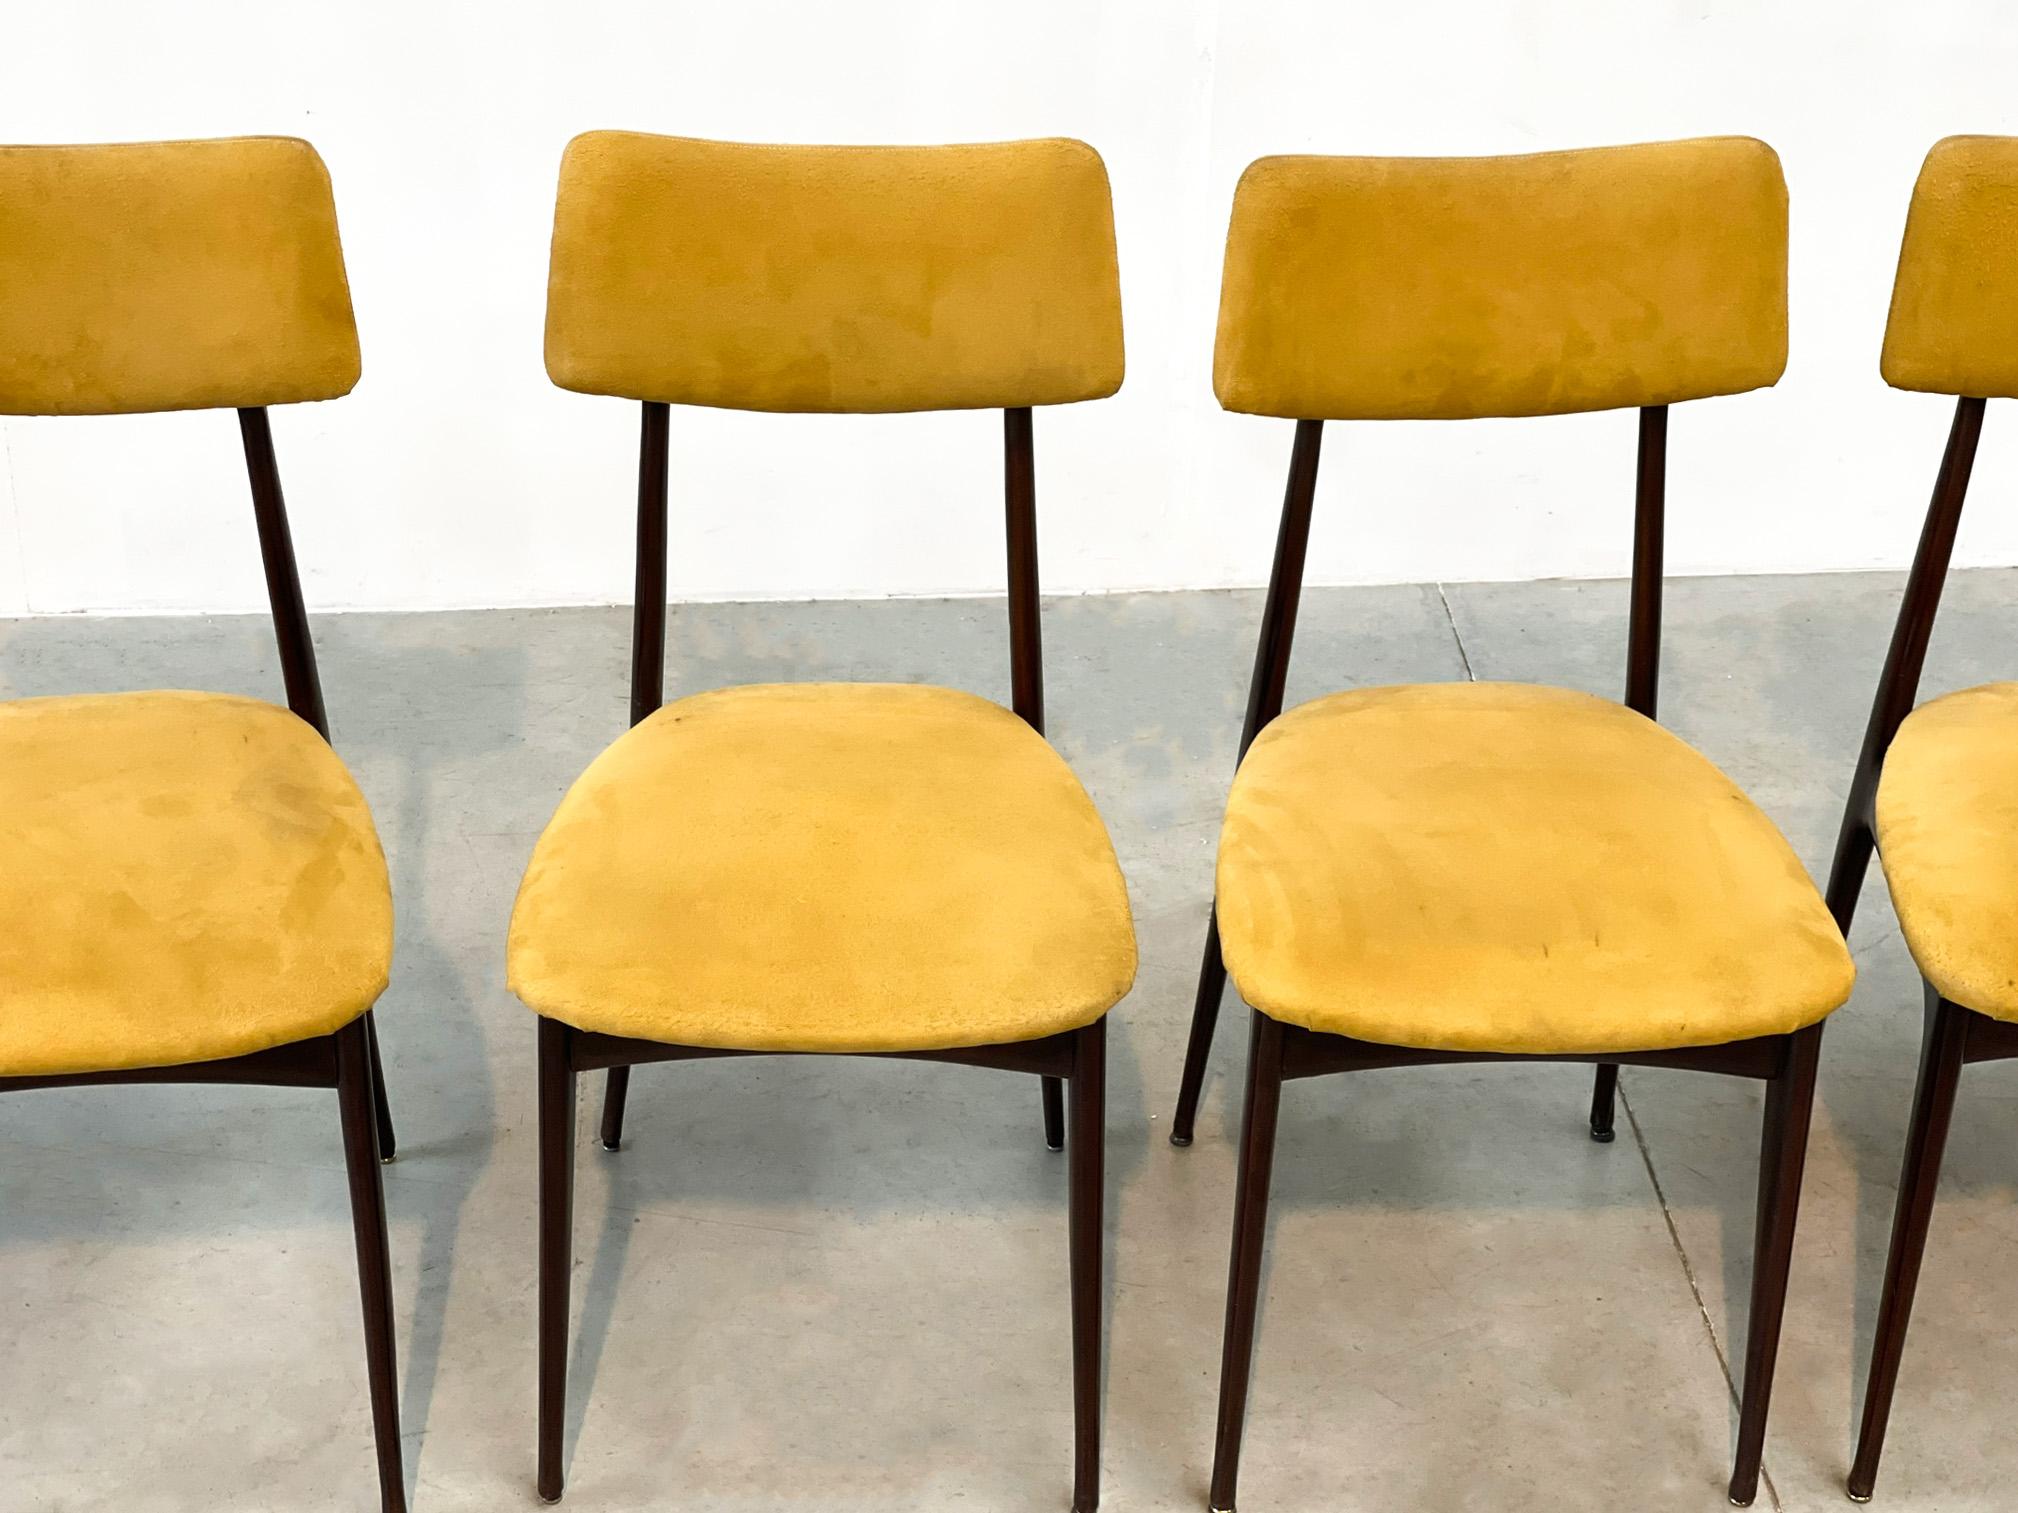 Elegantes chaises de salle à manger italiennes du milieu du siècle avec des cadres en bois de rose et un revêtement en daim jaune.

Les chaises sont magnifiquement fabriquées avec un réel savoir-faire artisanal.

Bon état

Années 1950 -